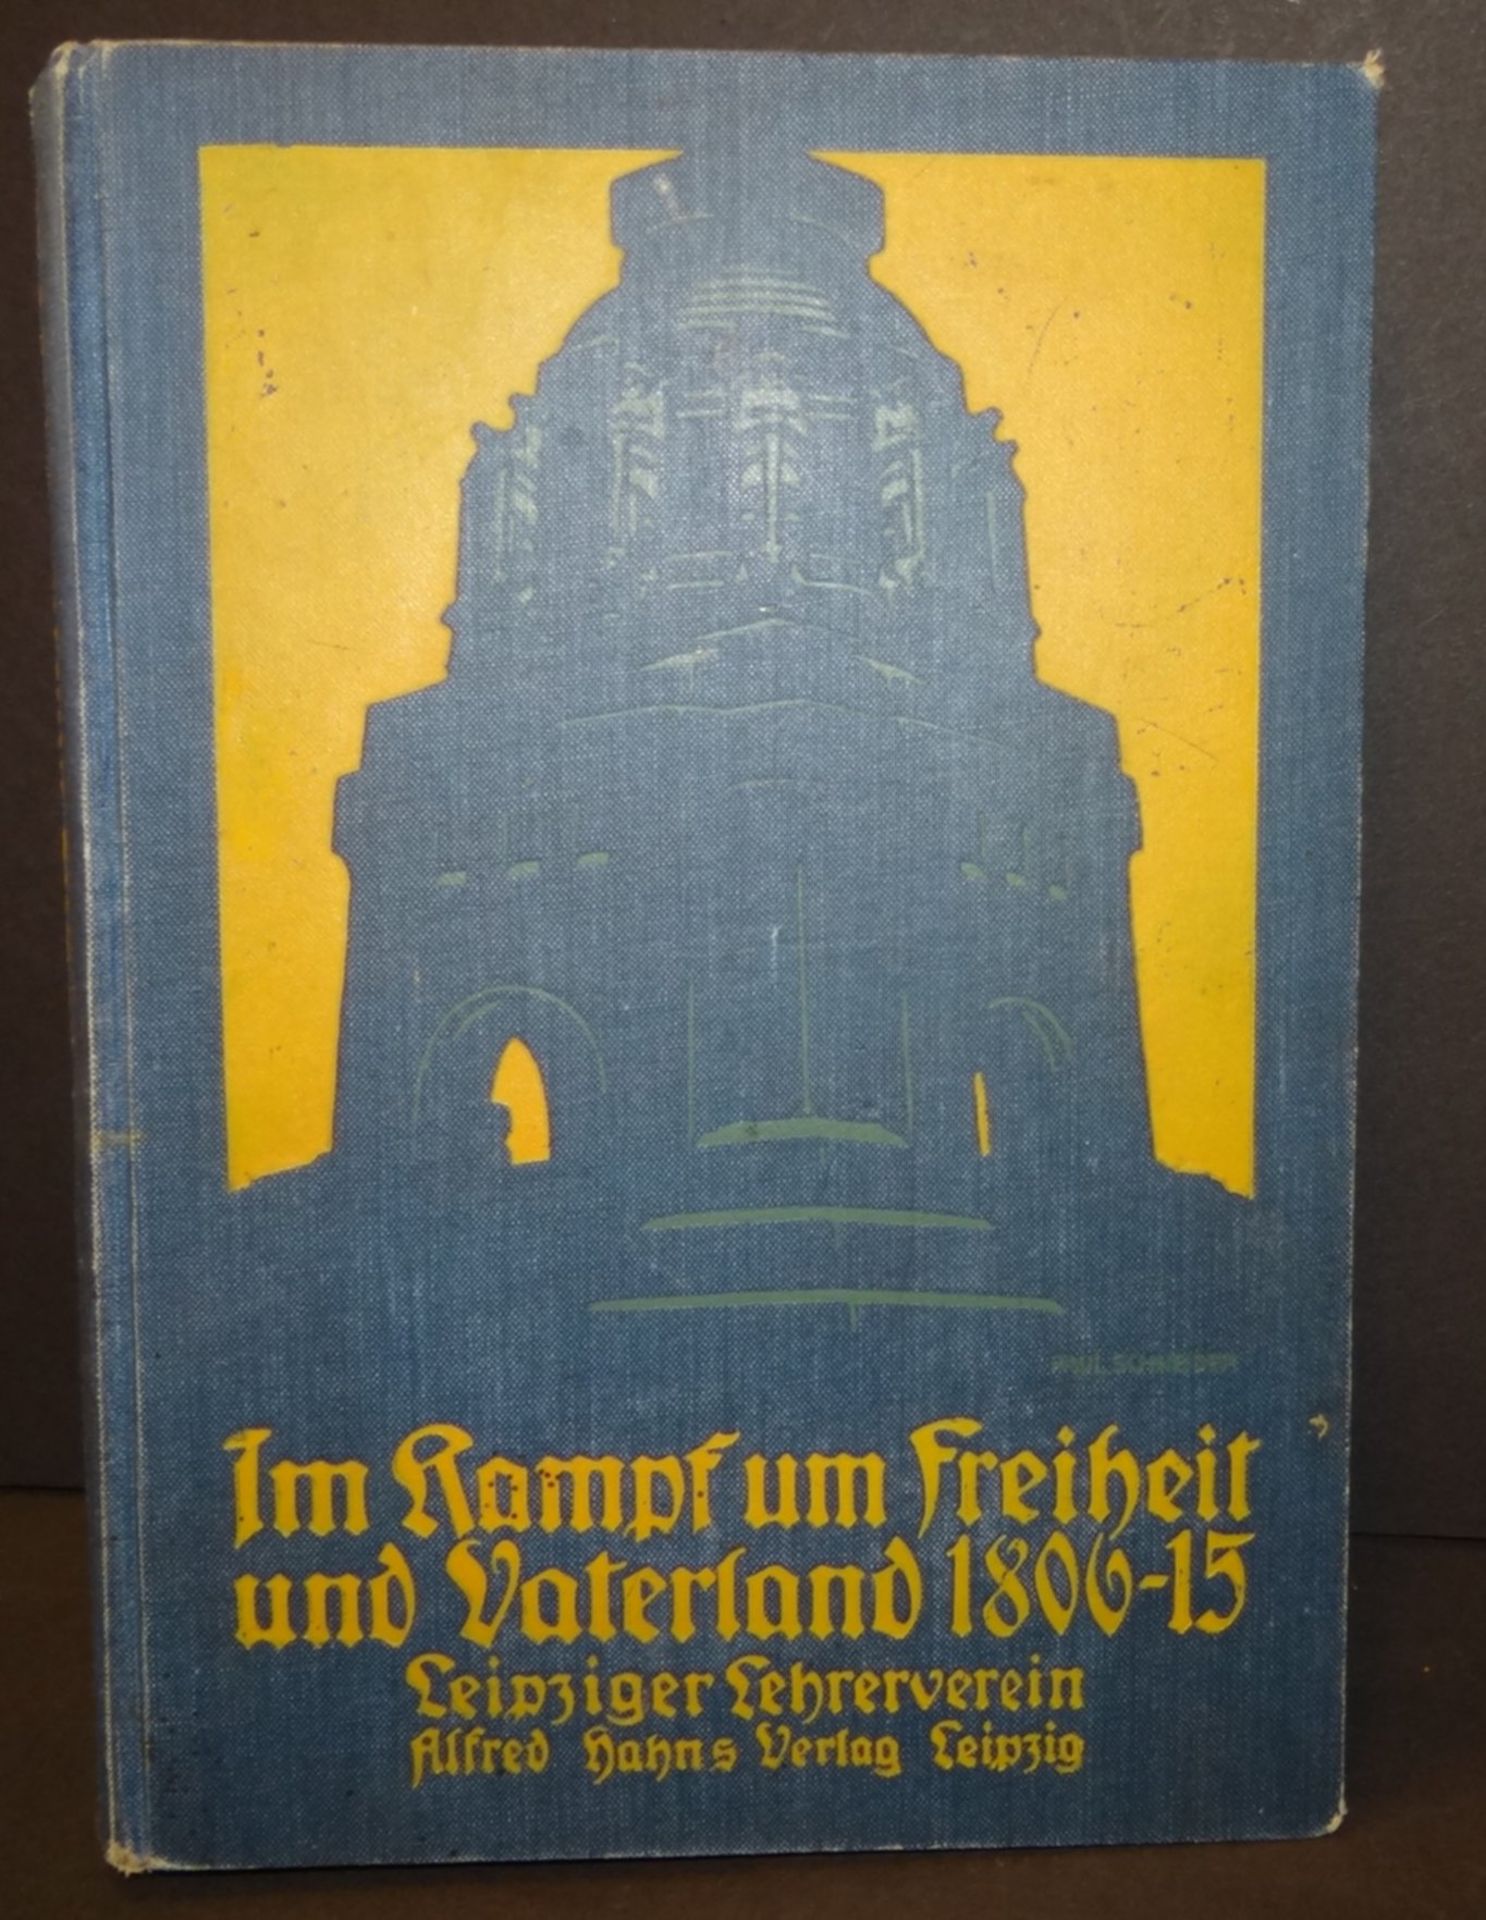 "Im Kampf um Freiheit und Vaterland, 1806-1815", 1912, illustriert